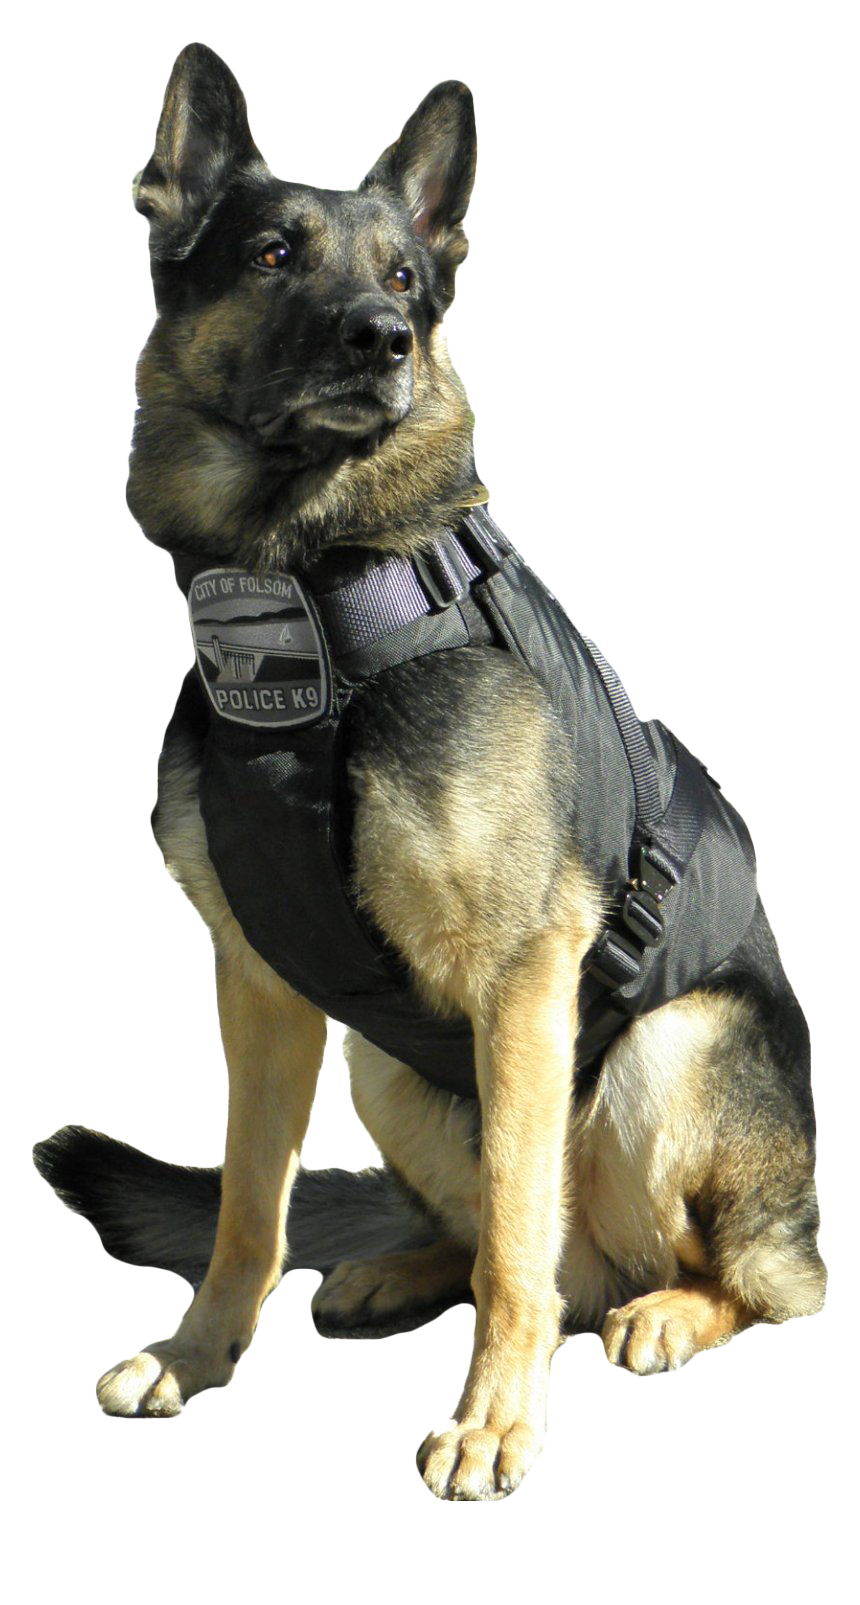 Immagine Trasparente del cane da pastore tedesco della polizia